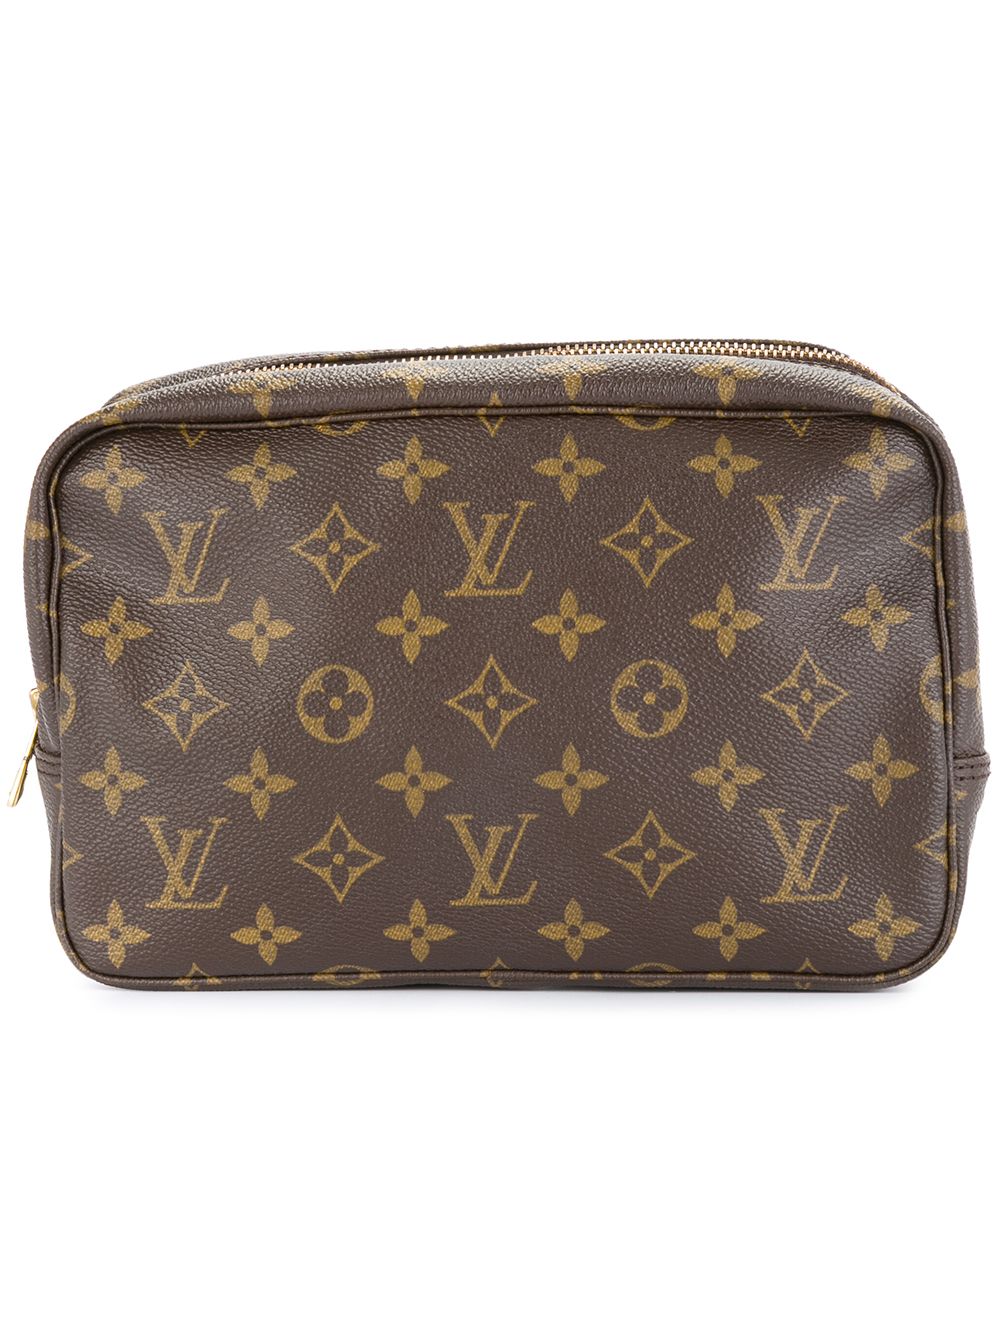 Louis Vuitton, Bags, Louis Vuitton Trousse De Toilette Clutch Bag